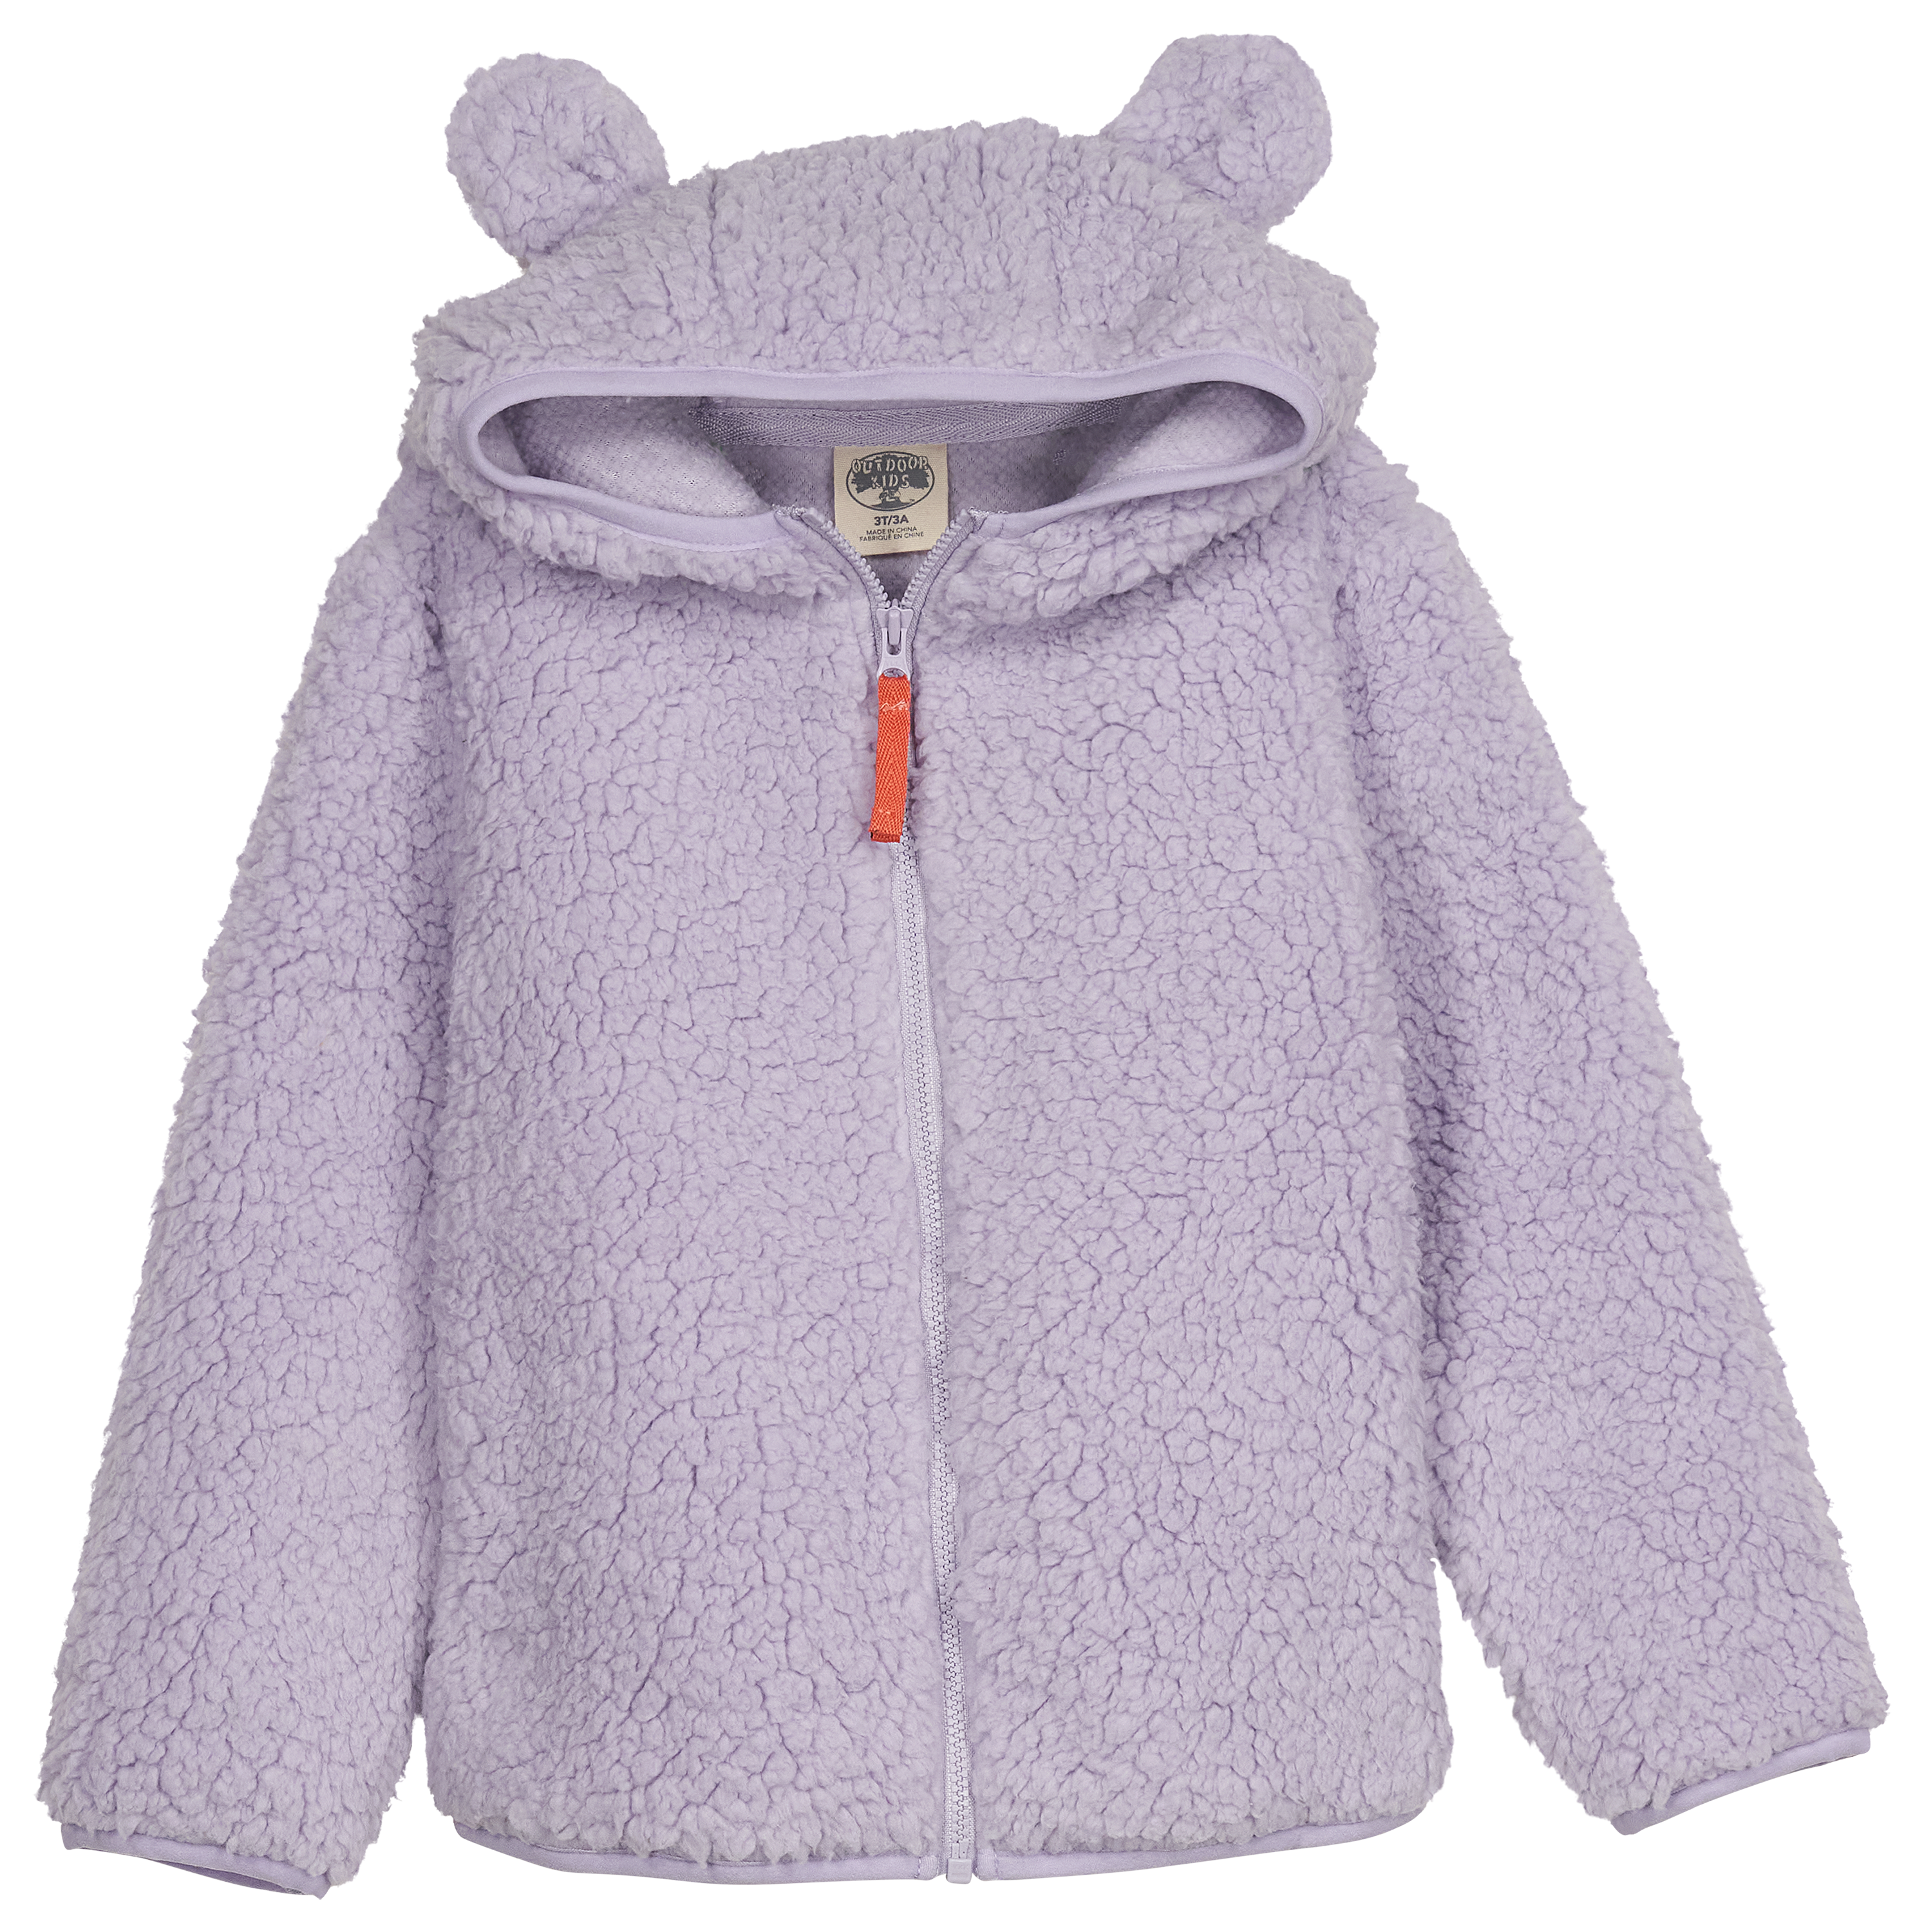 Outdoor Kids Cozy Fleece Full-Zip Hoodie for Toddlers - Lavender - 3T